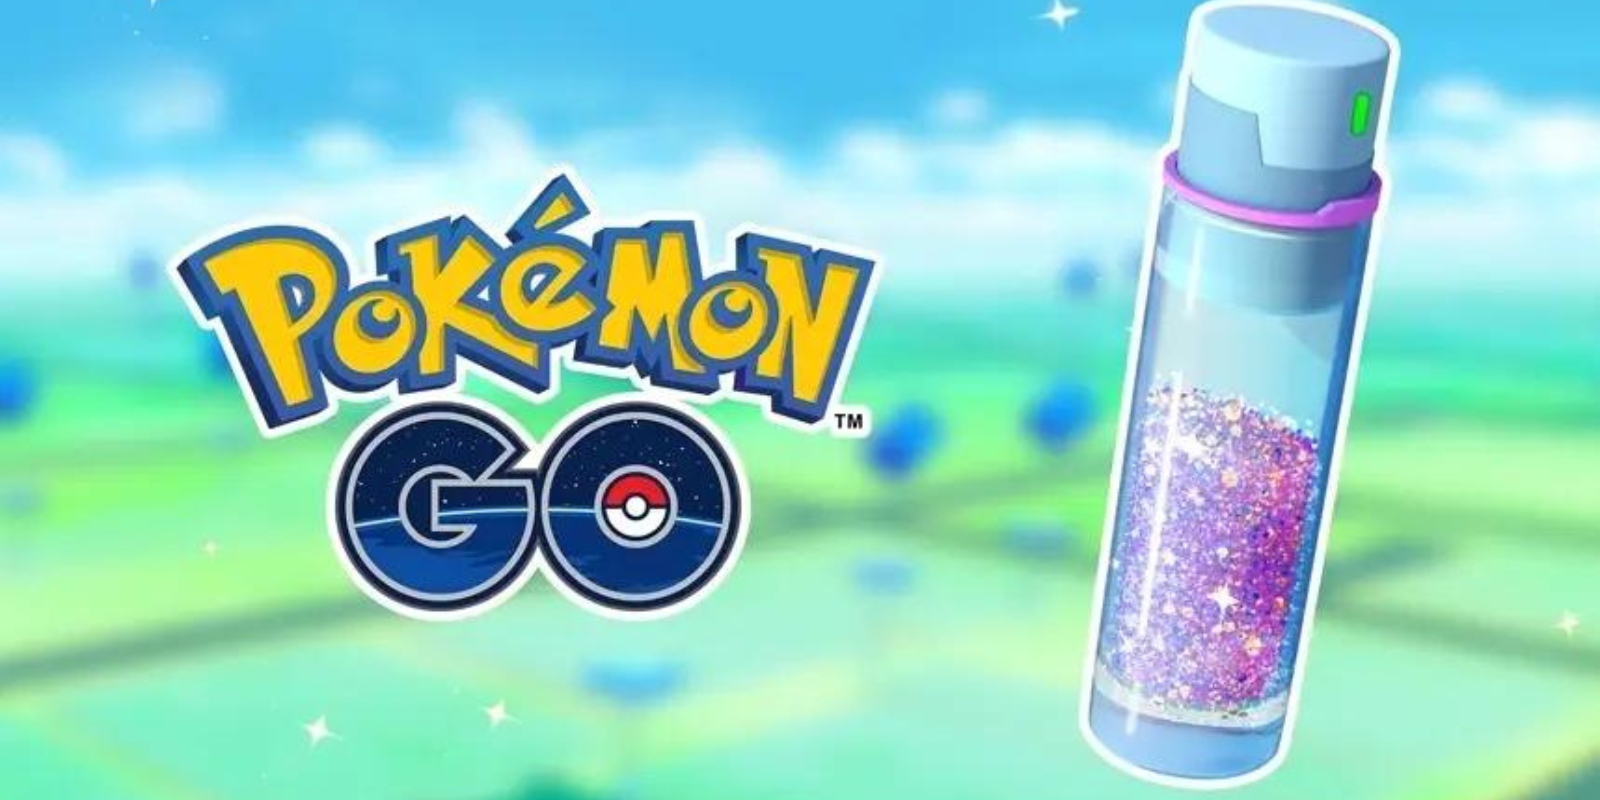 Stardust aparece ao lado do logotipo do Pokémon GO